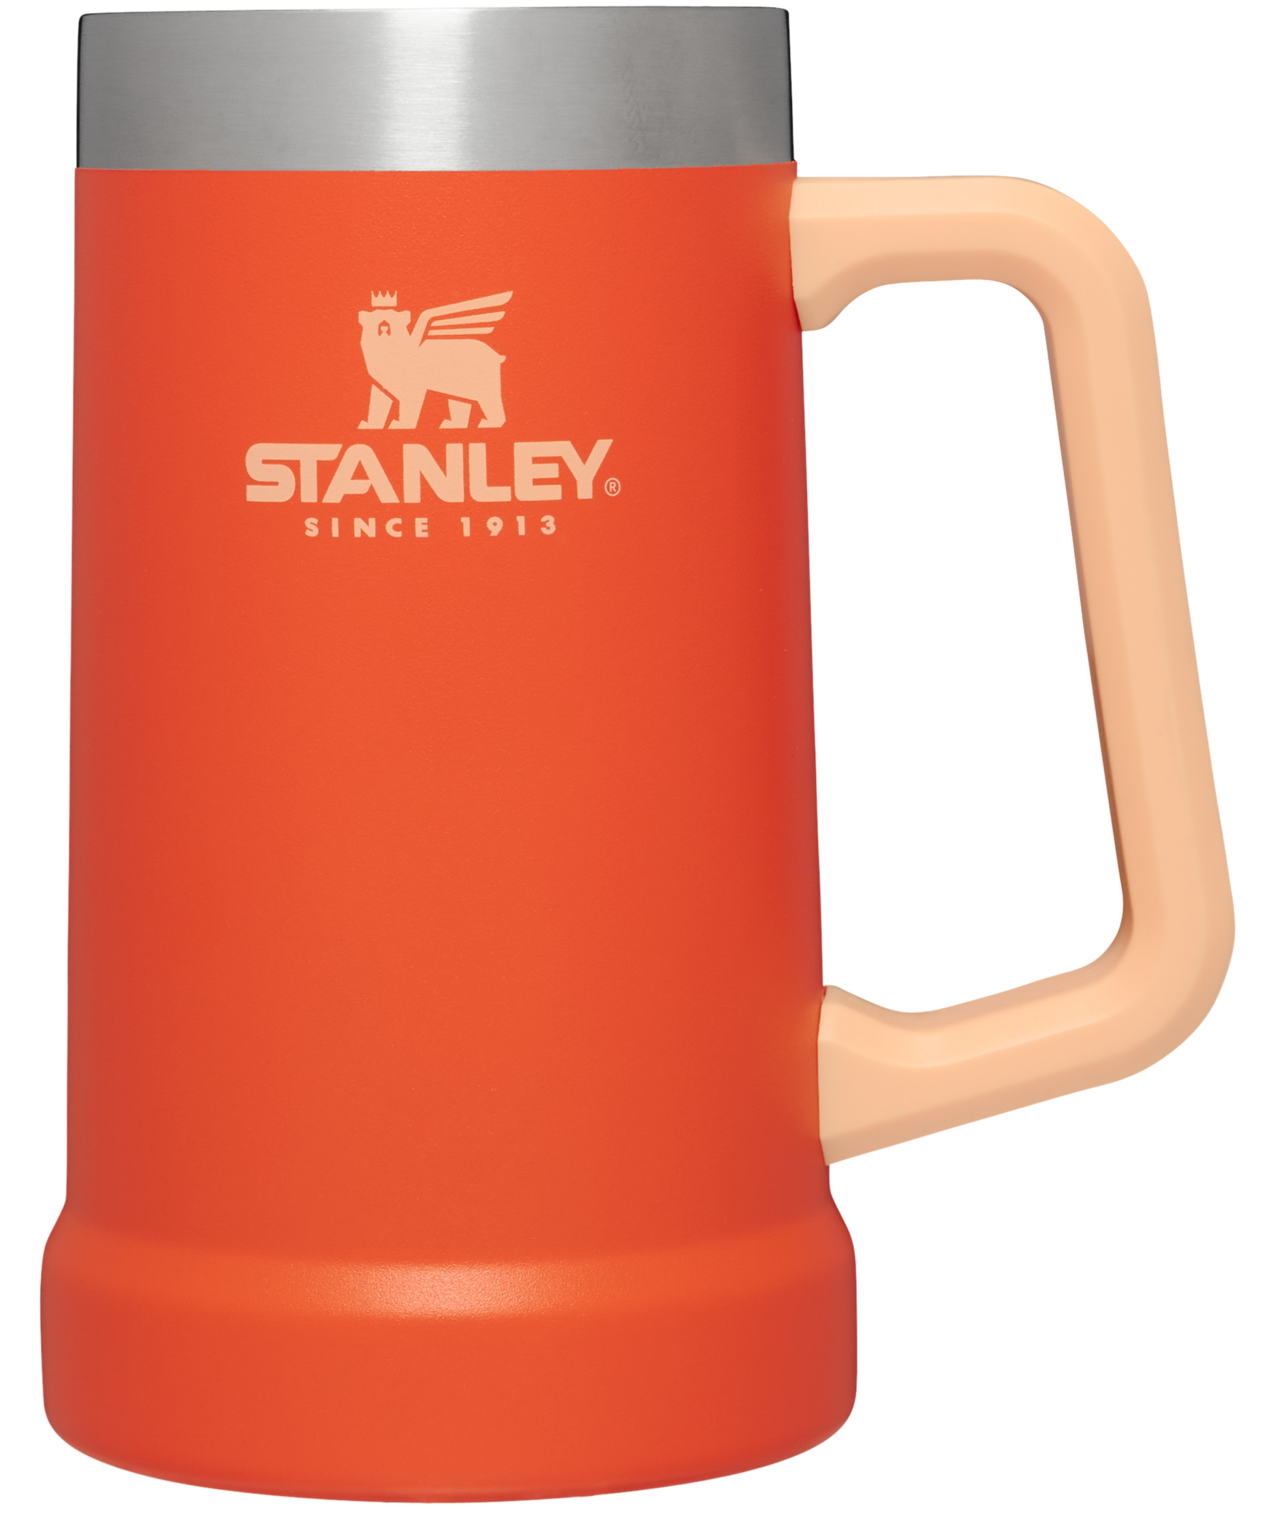 Stanley Adventure Big Grip Beer Stein, 24oz Stainless Steel Beer